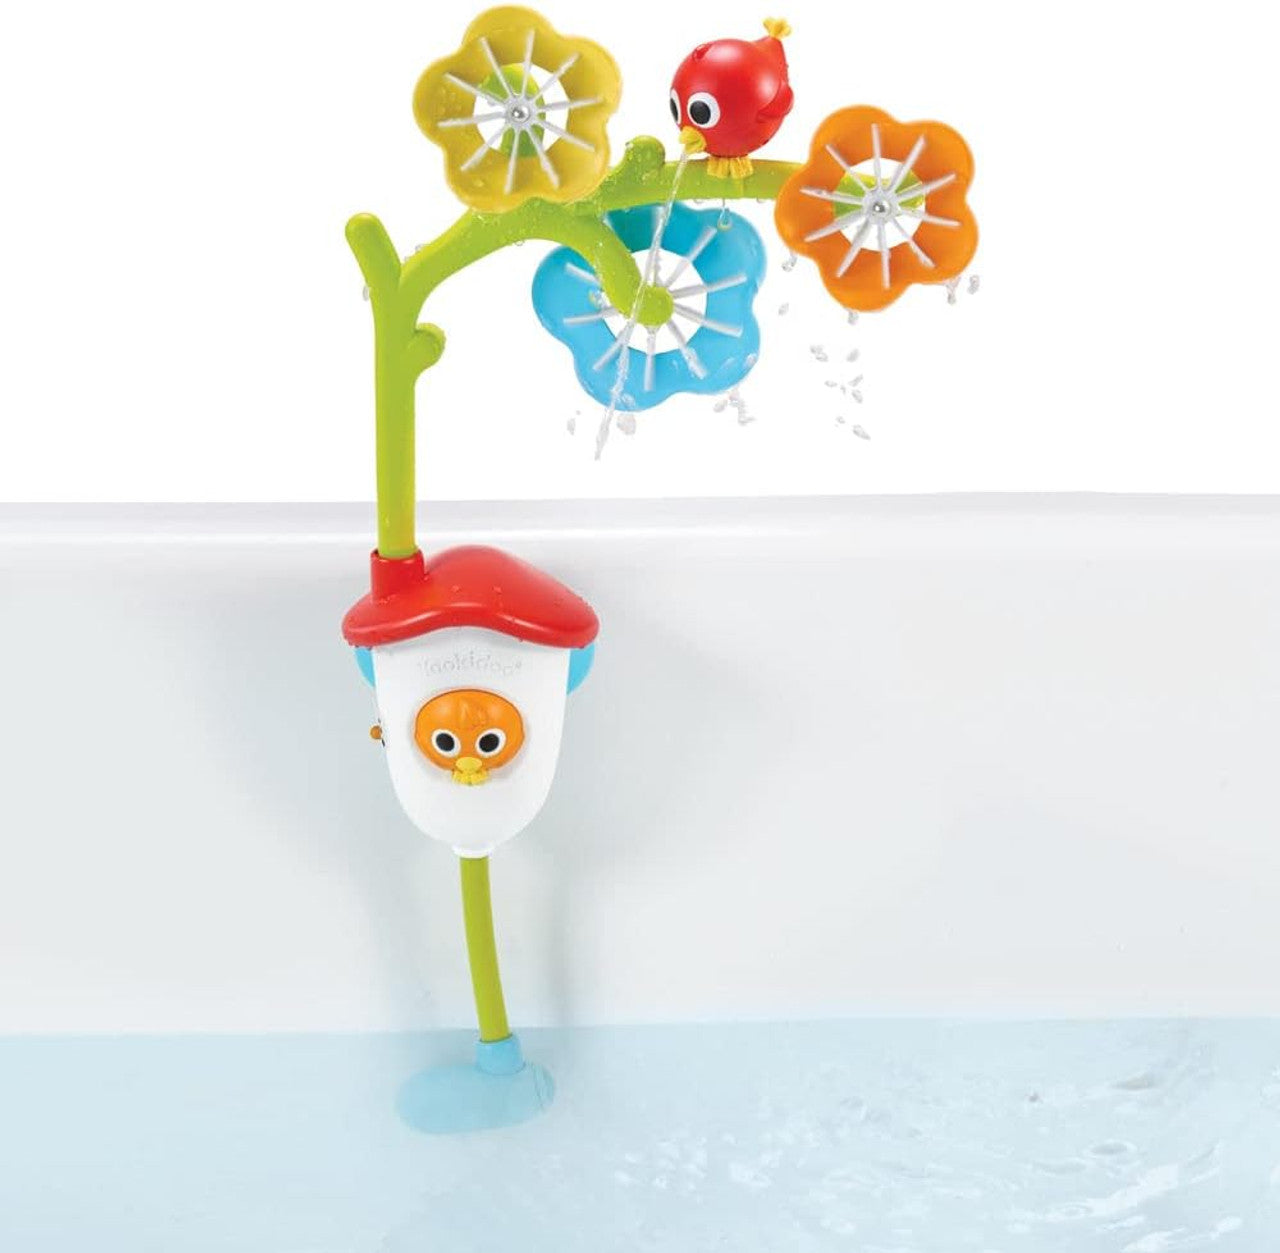 Sensory Bath Mobile by Yookidoo